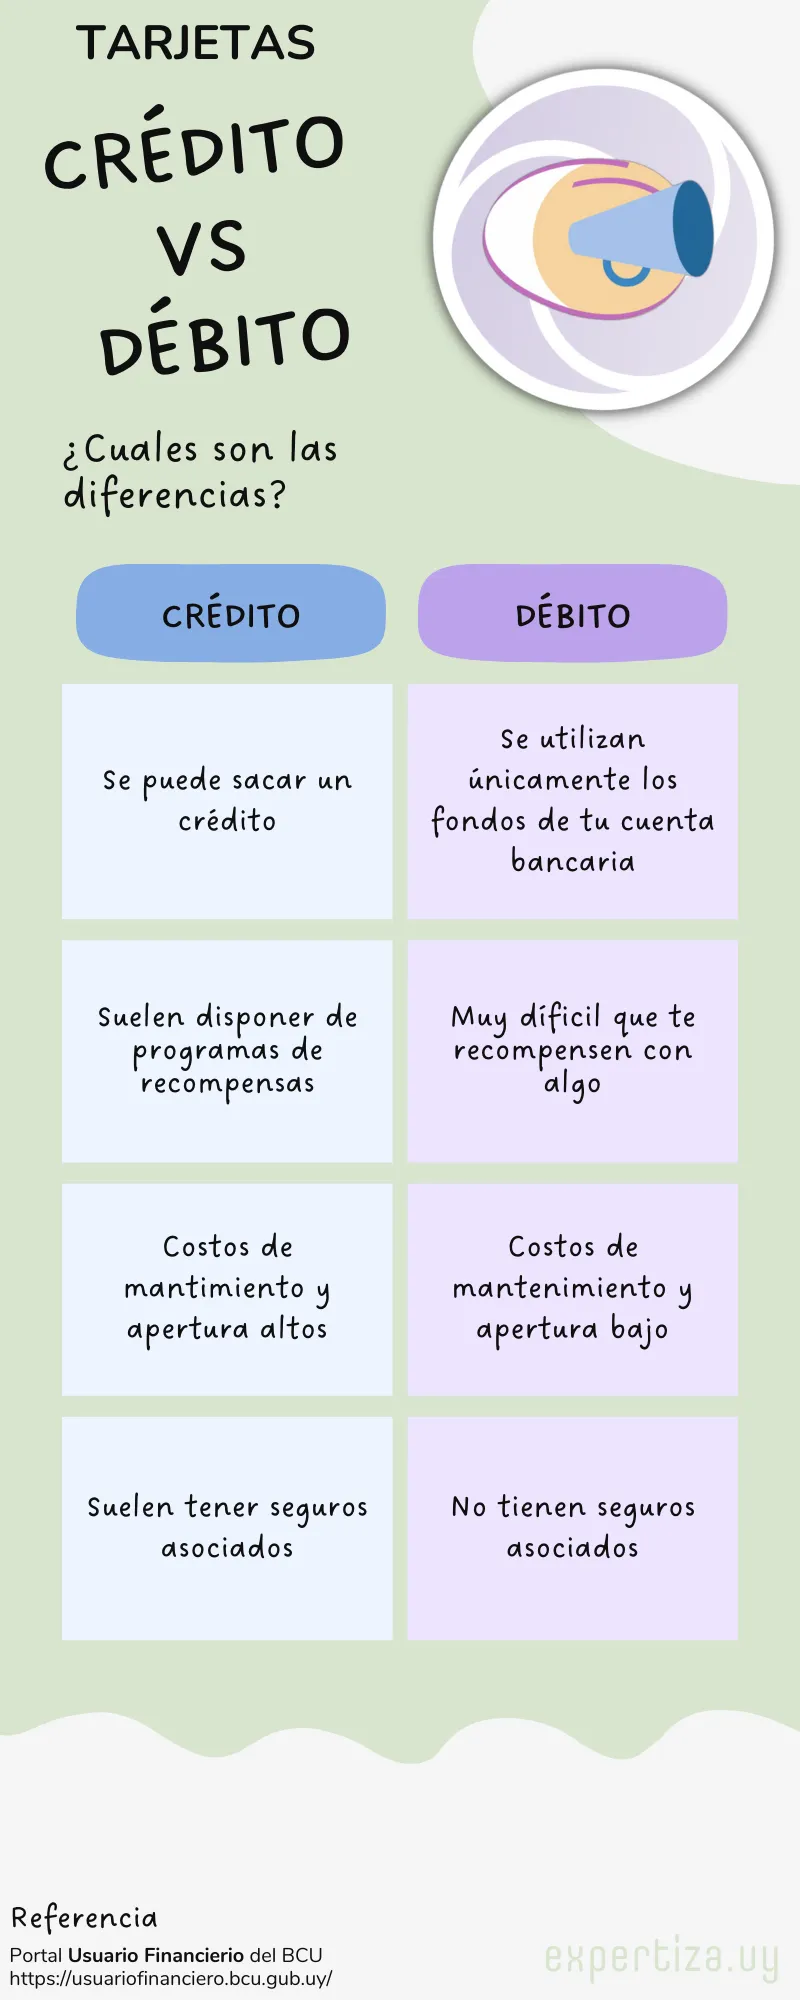 Infografía con las diferencias entre las tarjetas de crédito y débito en Uruguay.